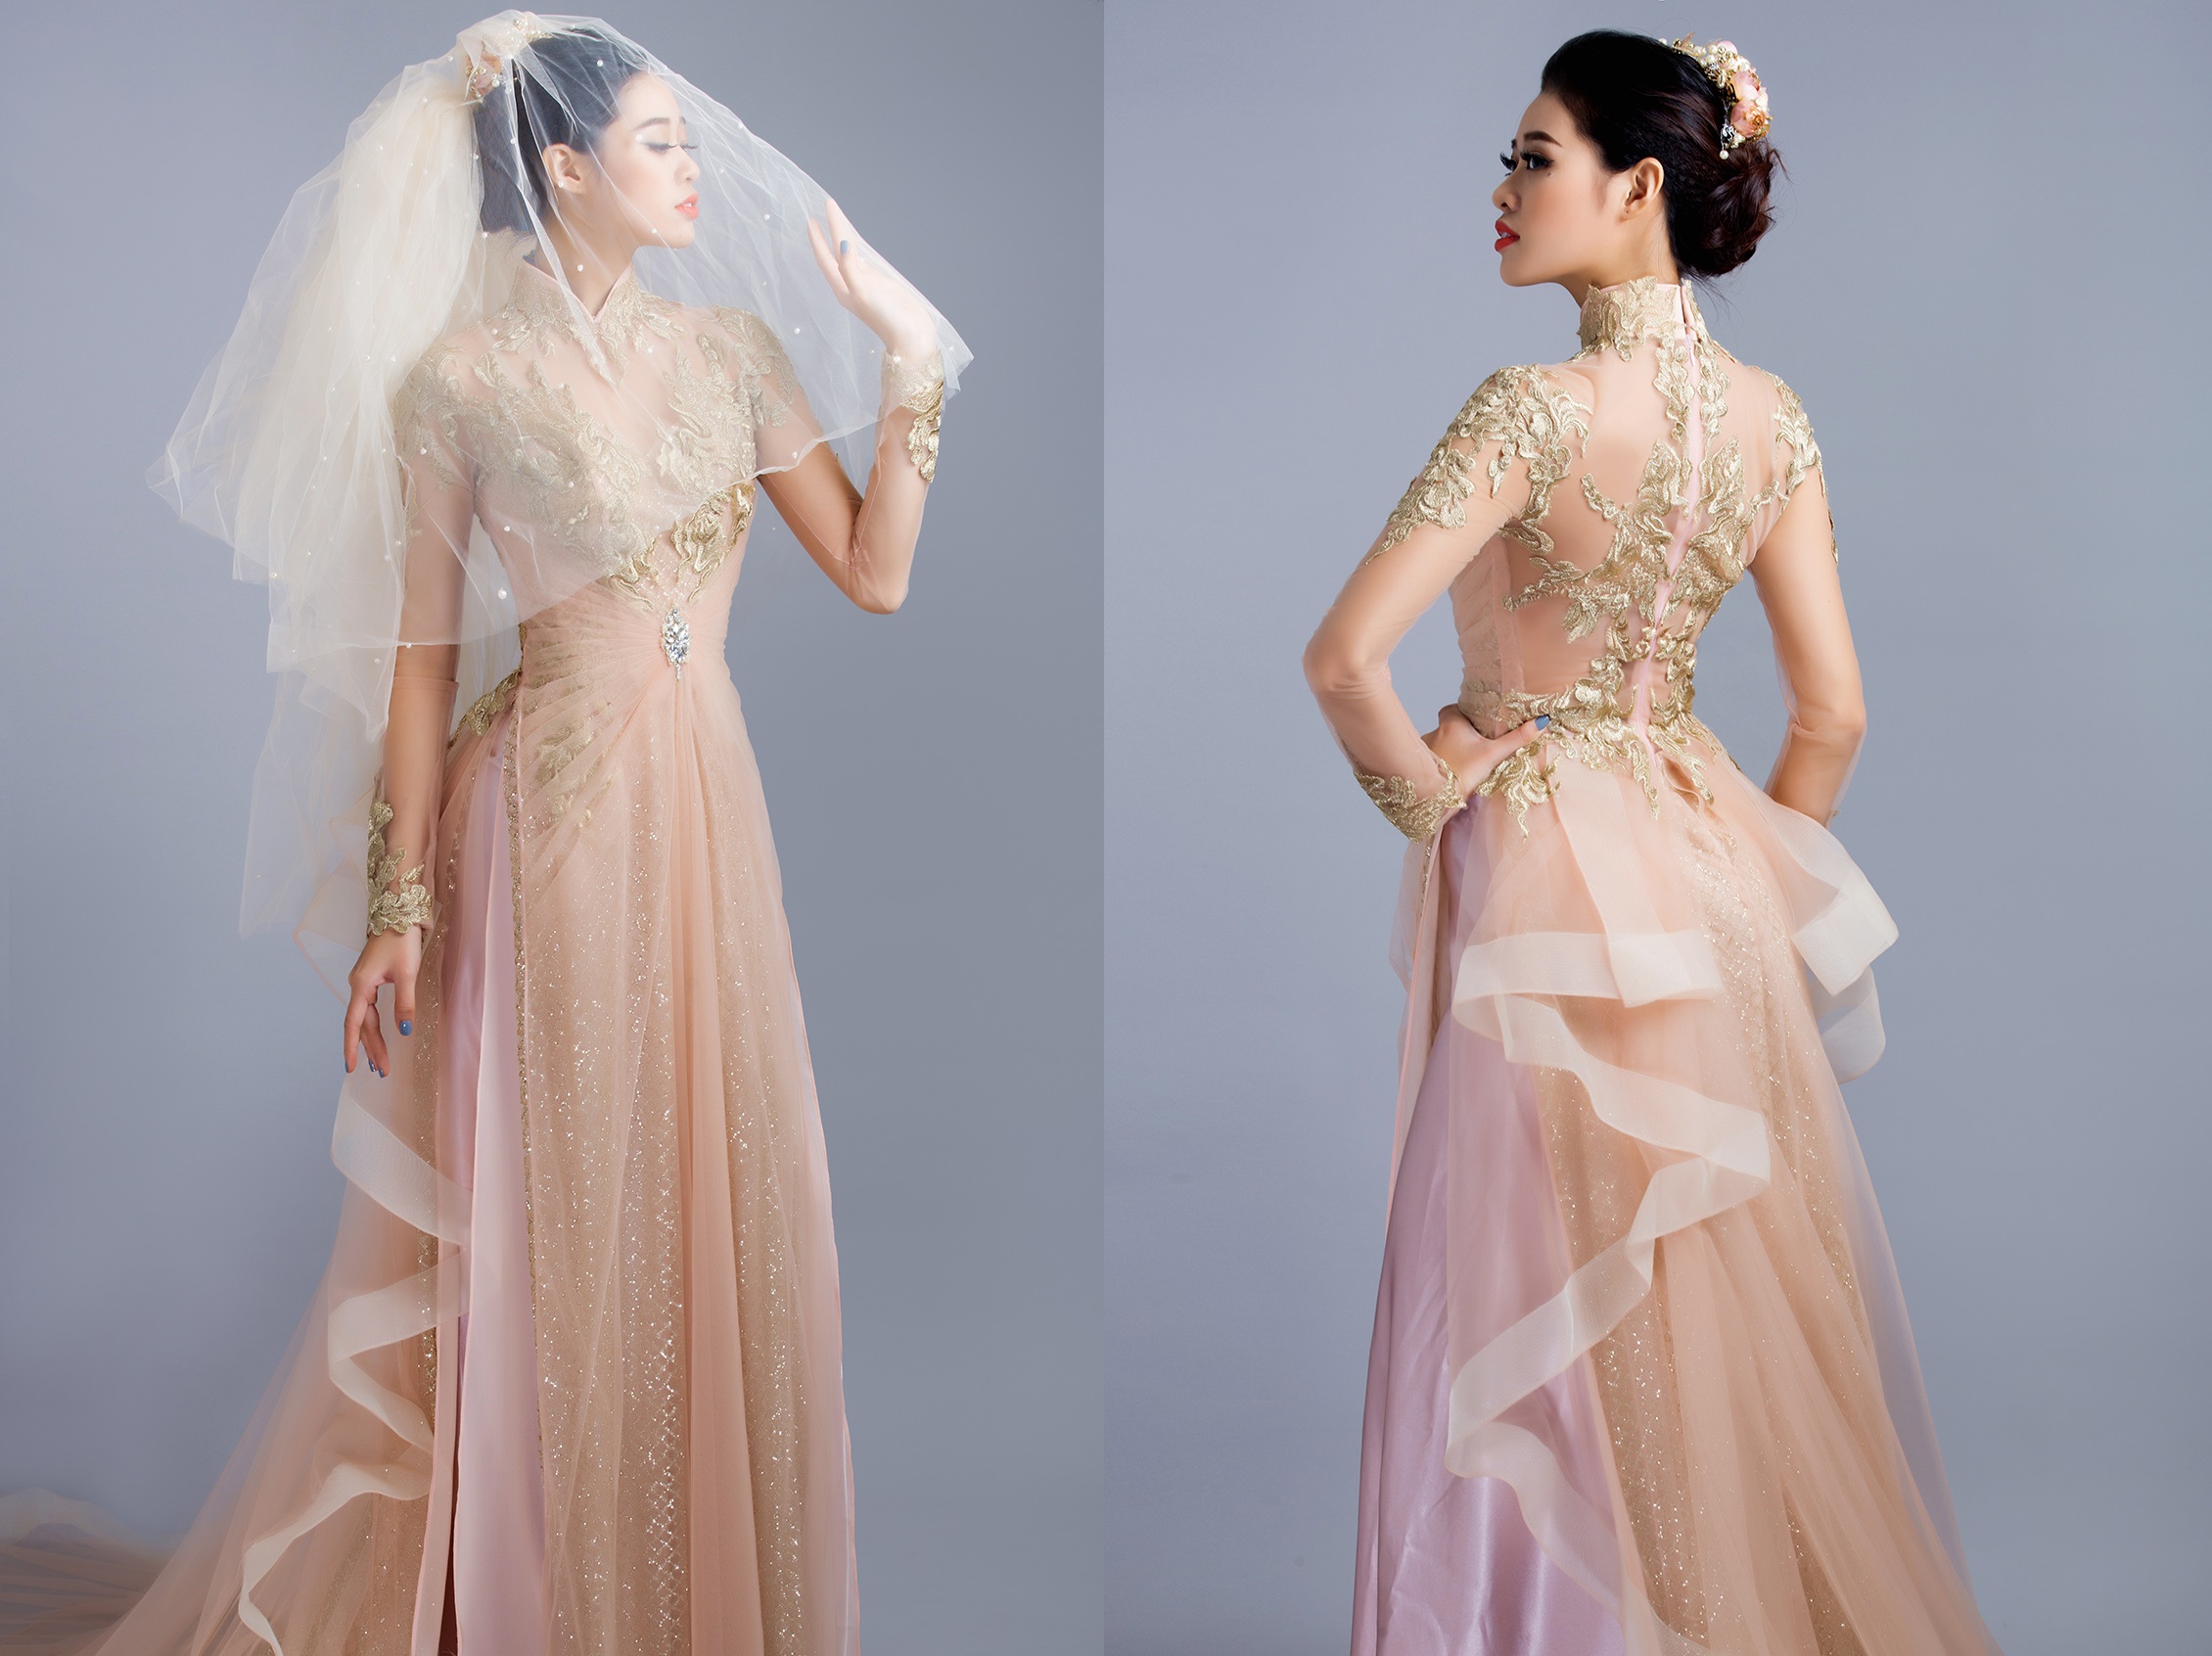 Tham khảo những mấu áo dài cưới đẹp ngây ngất từ thương hiệu áo dài danh tiếng Minh Châu.